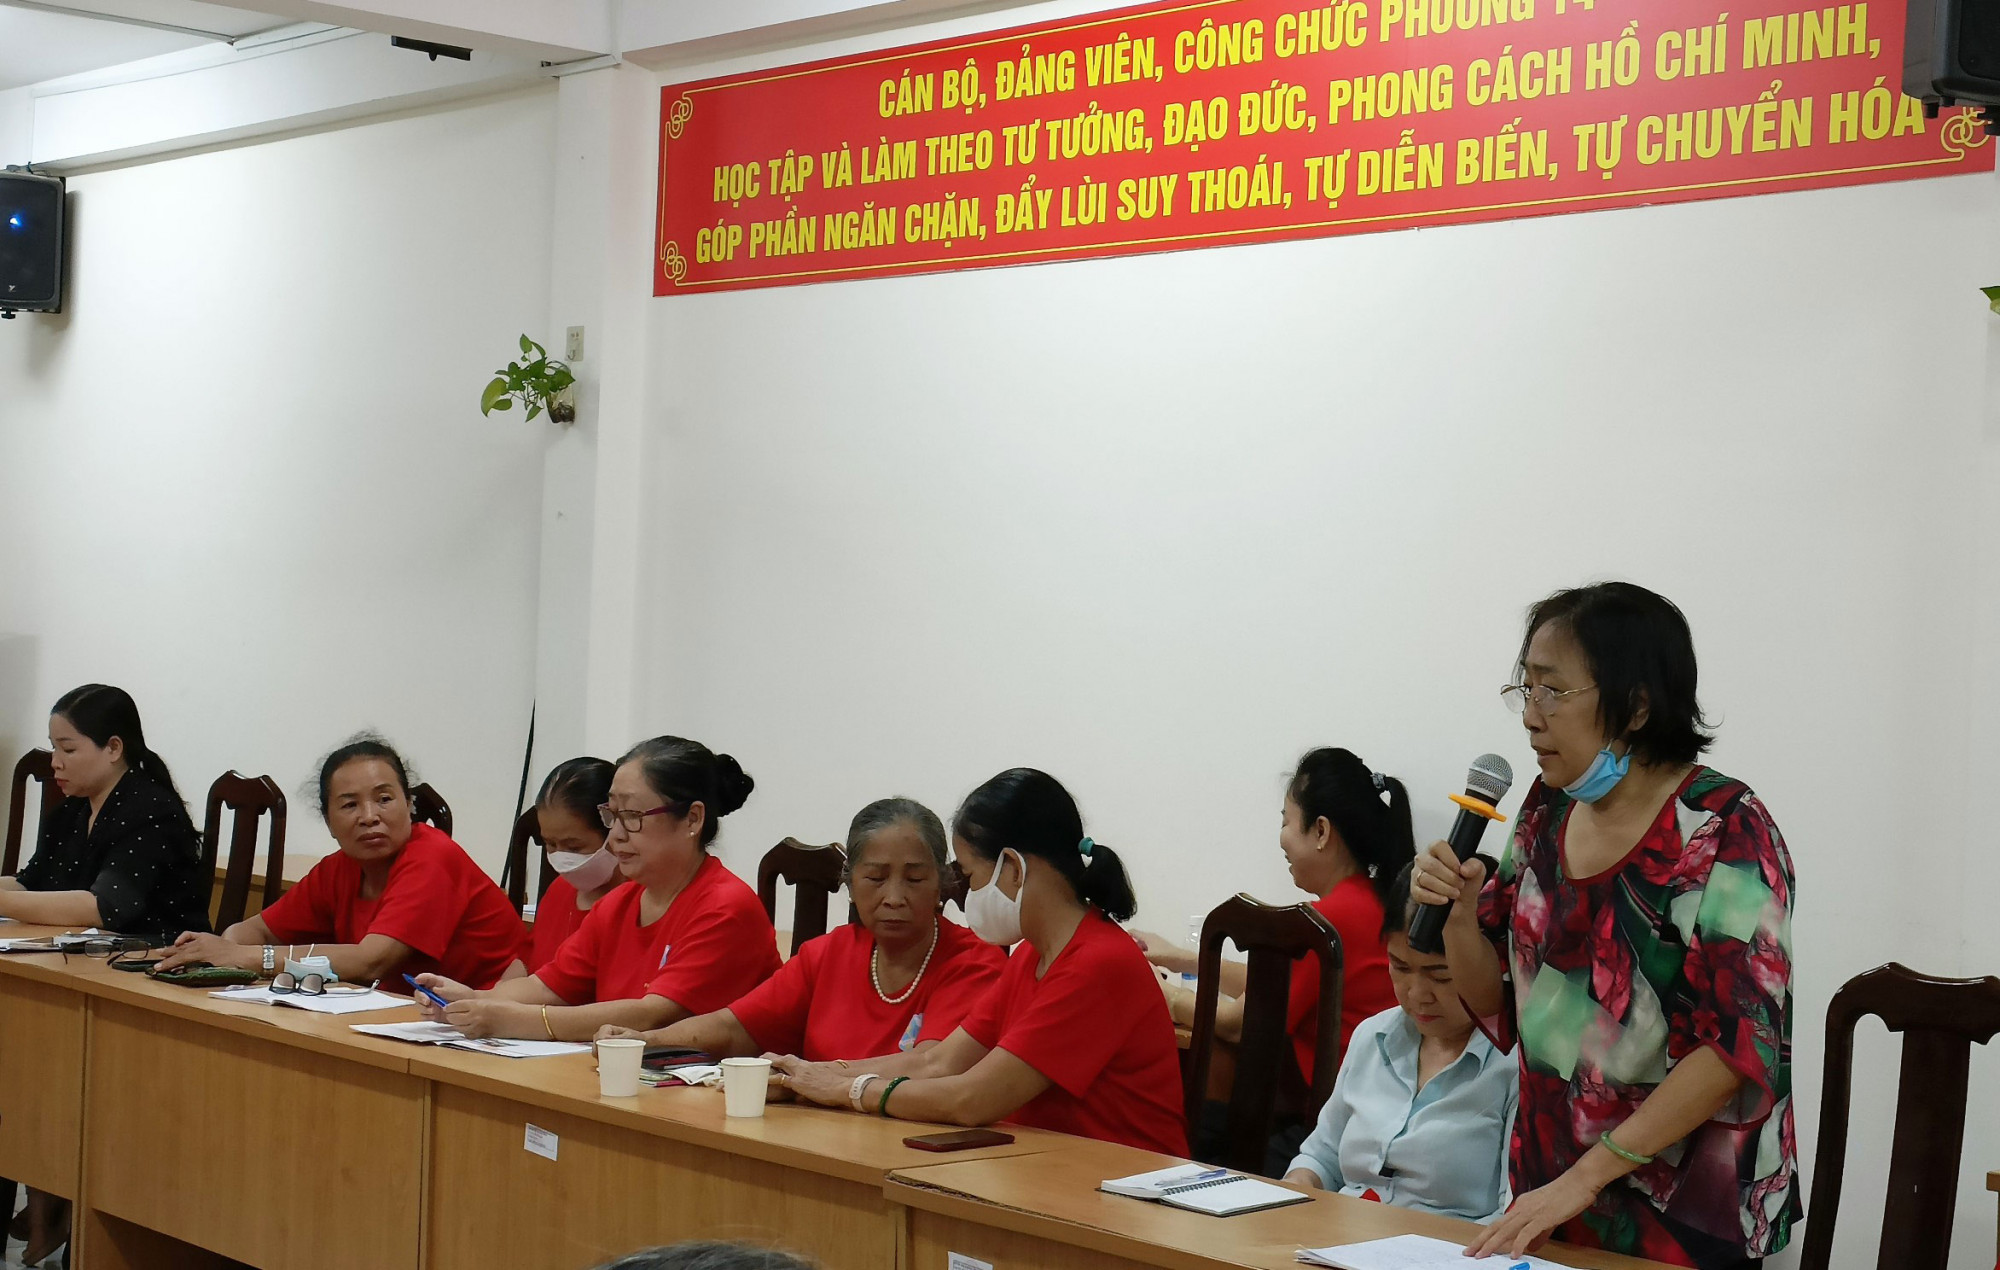 Cô Lê Thị ngọc Sương - Chủ tịch Hội Luật gia quận 10, đồng thời cũng là thành viên Tổ tư vấn đang đóng góp ý kiến